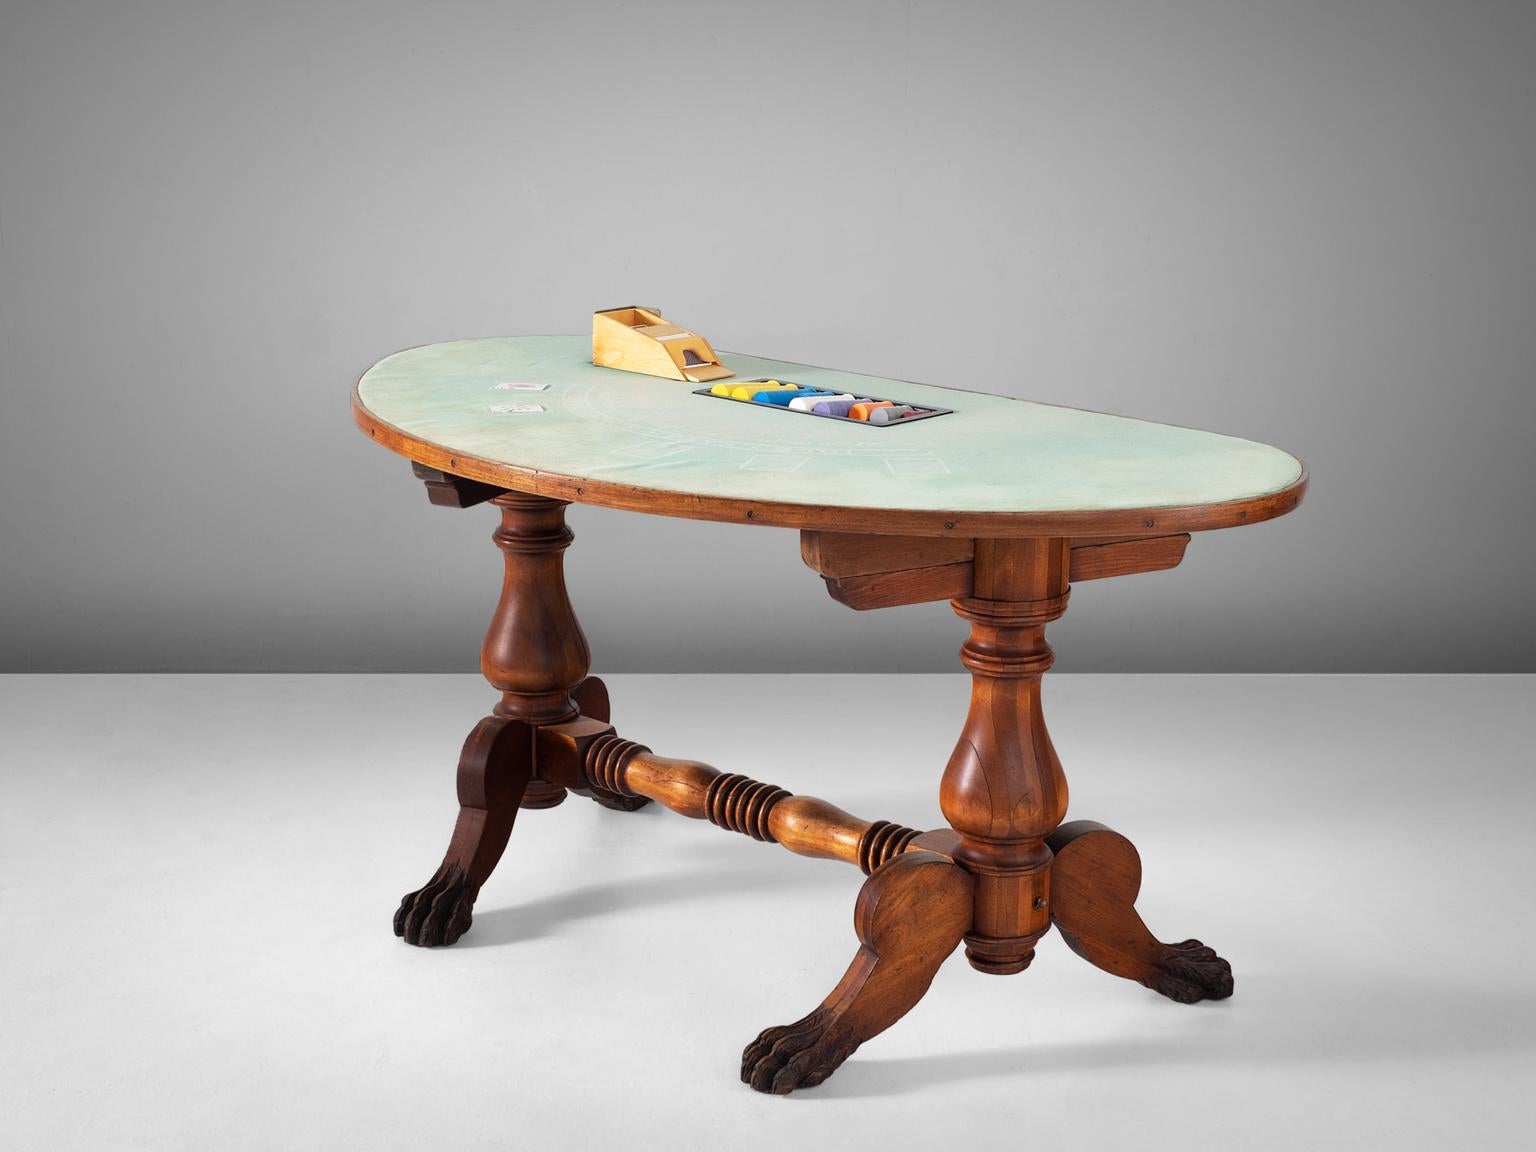 Spieltisch aus Mahagoni, Messing und Stoff, Vereinigte Staaten, 1940er Jahre. 

Ein schöner antiker amerikanischer Mahagoni-Blackjack-Tisch in seinem ursprünglichen Zustand. Komplett mit Original-Kartenhalter. Der hölzerne Rahmen ist sehr